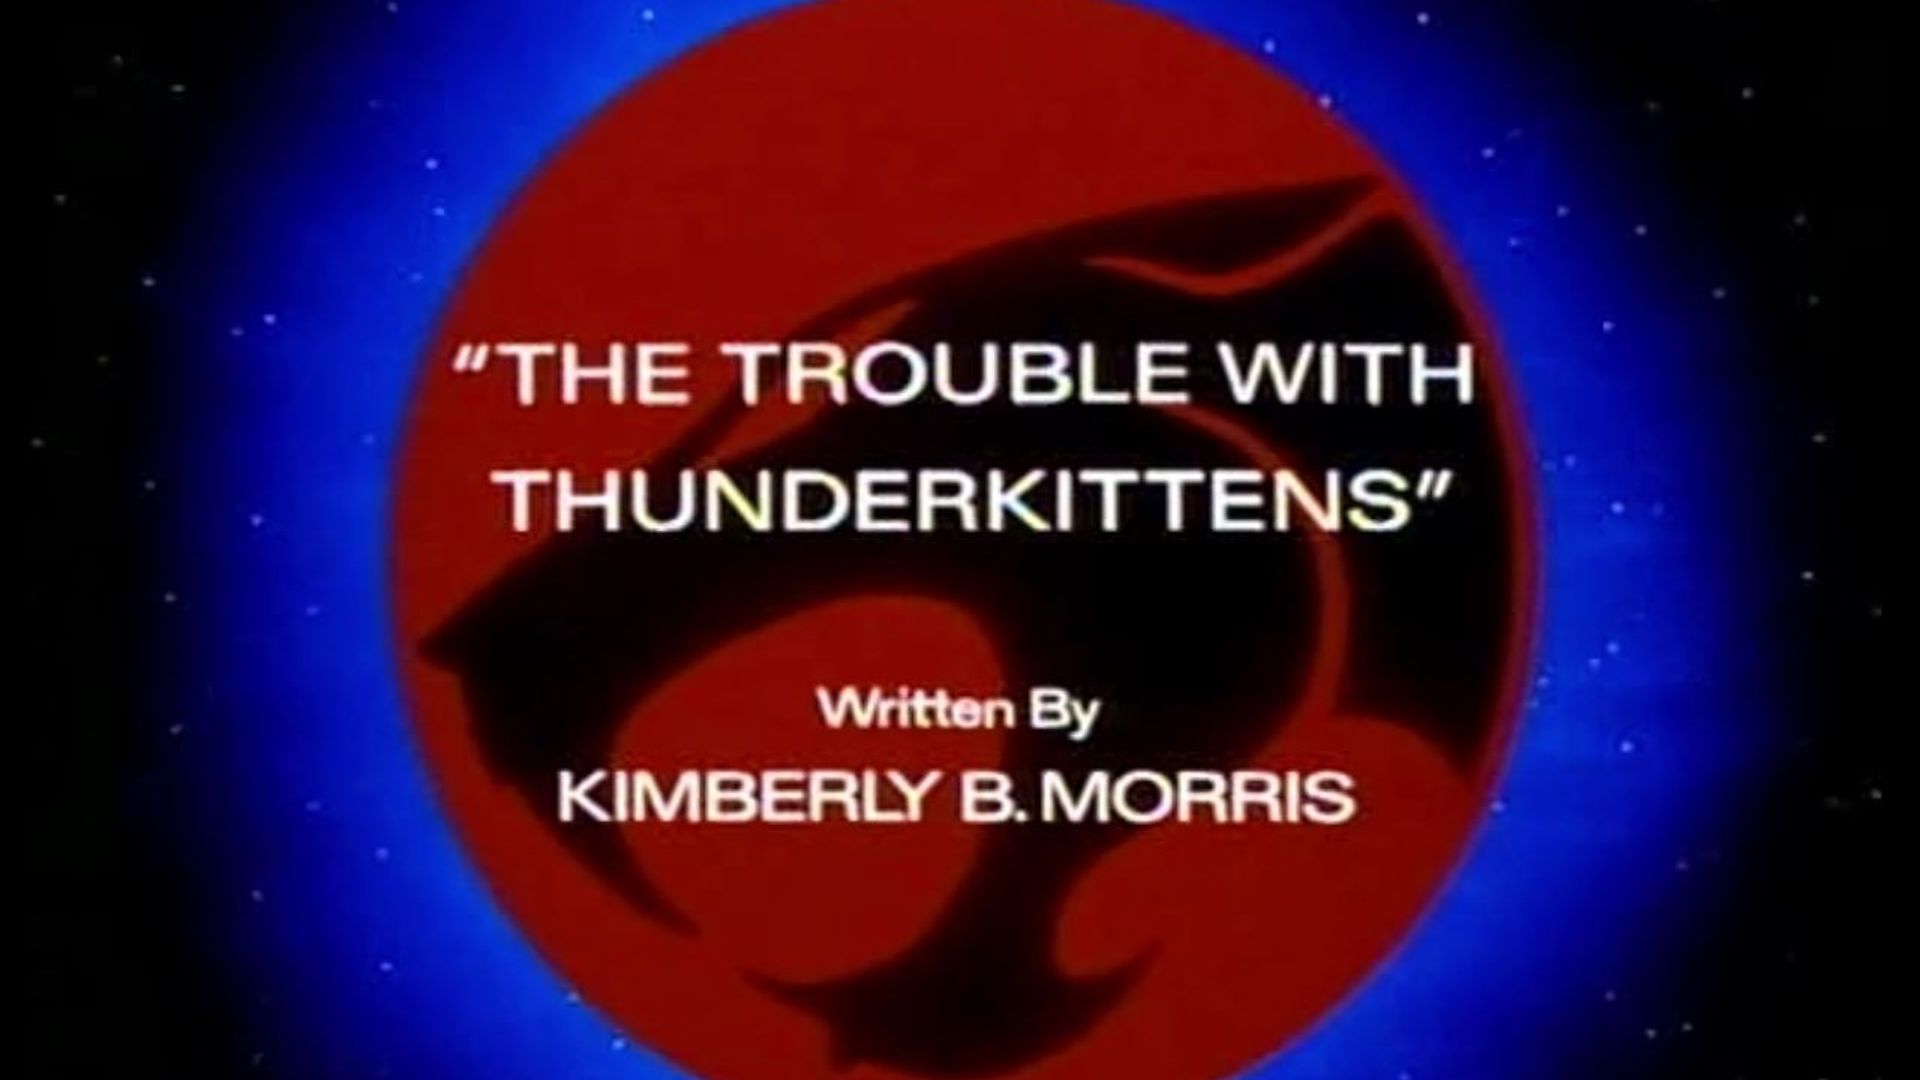 Thundercats background